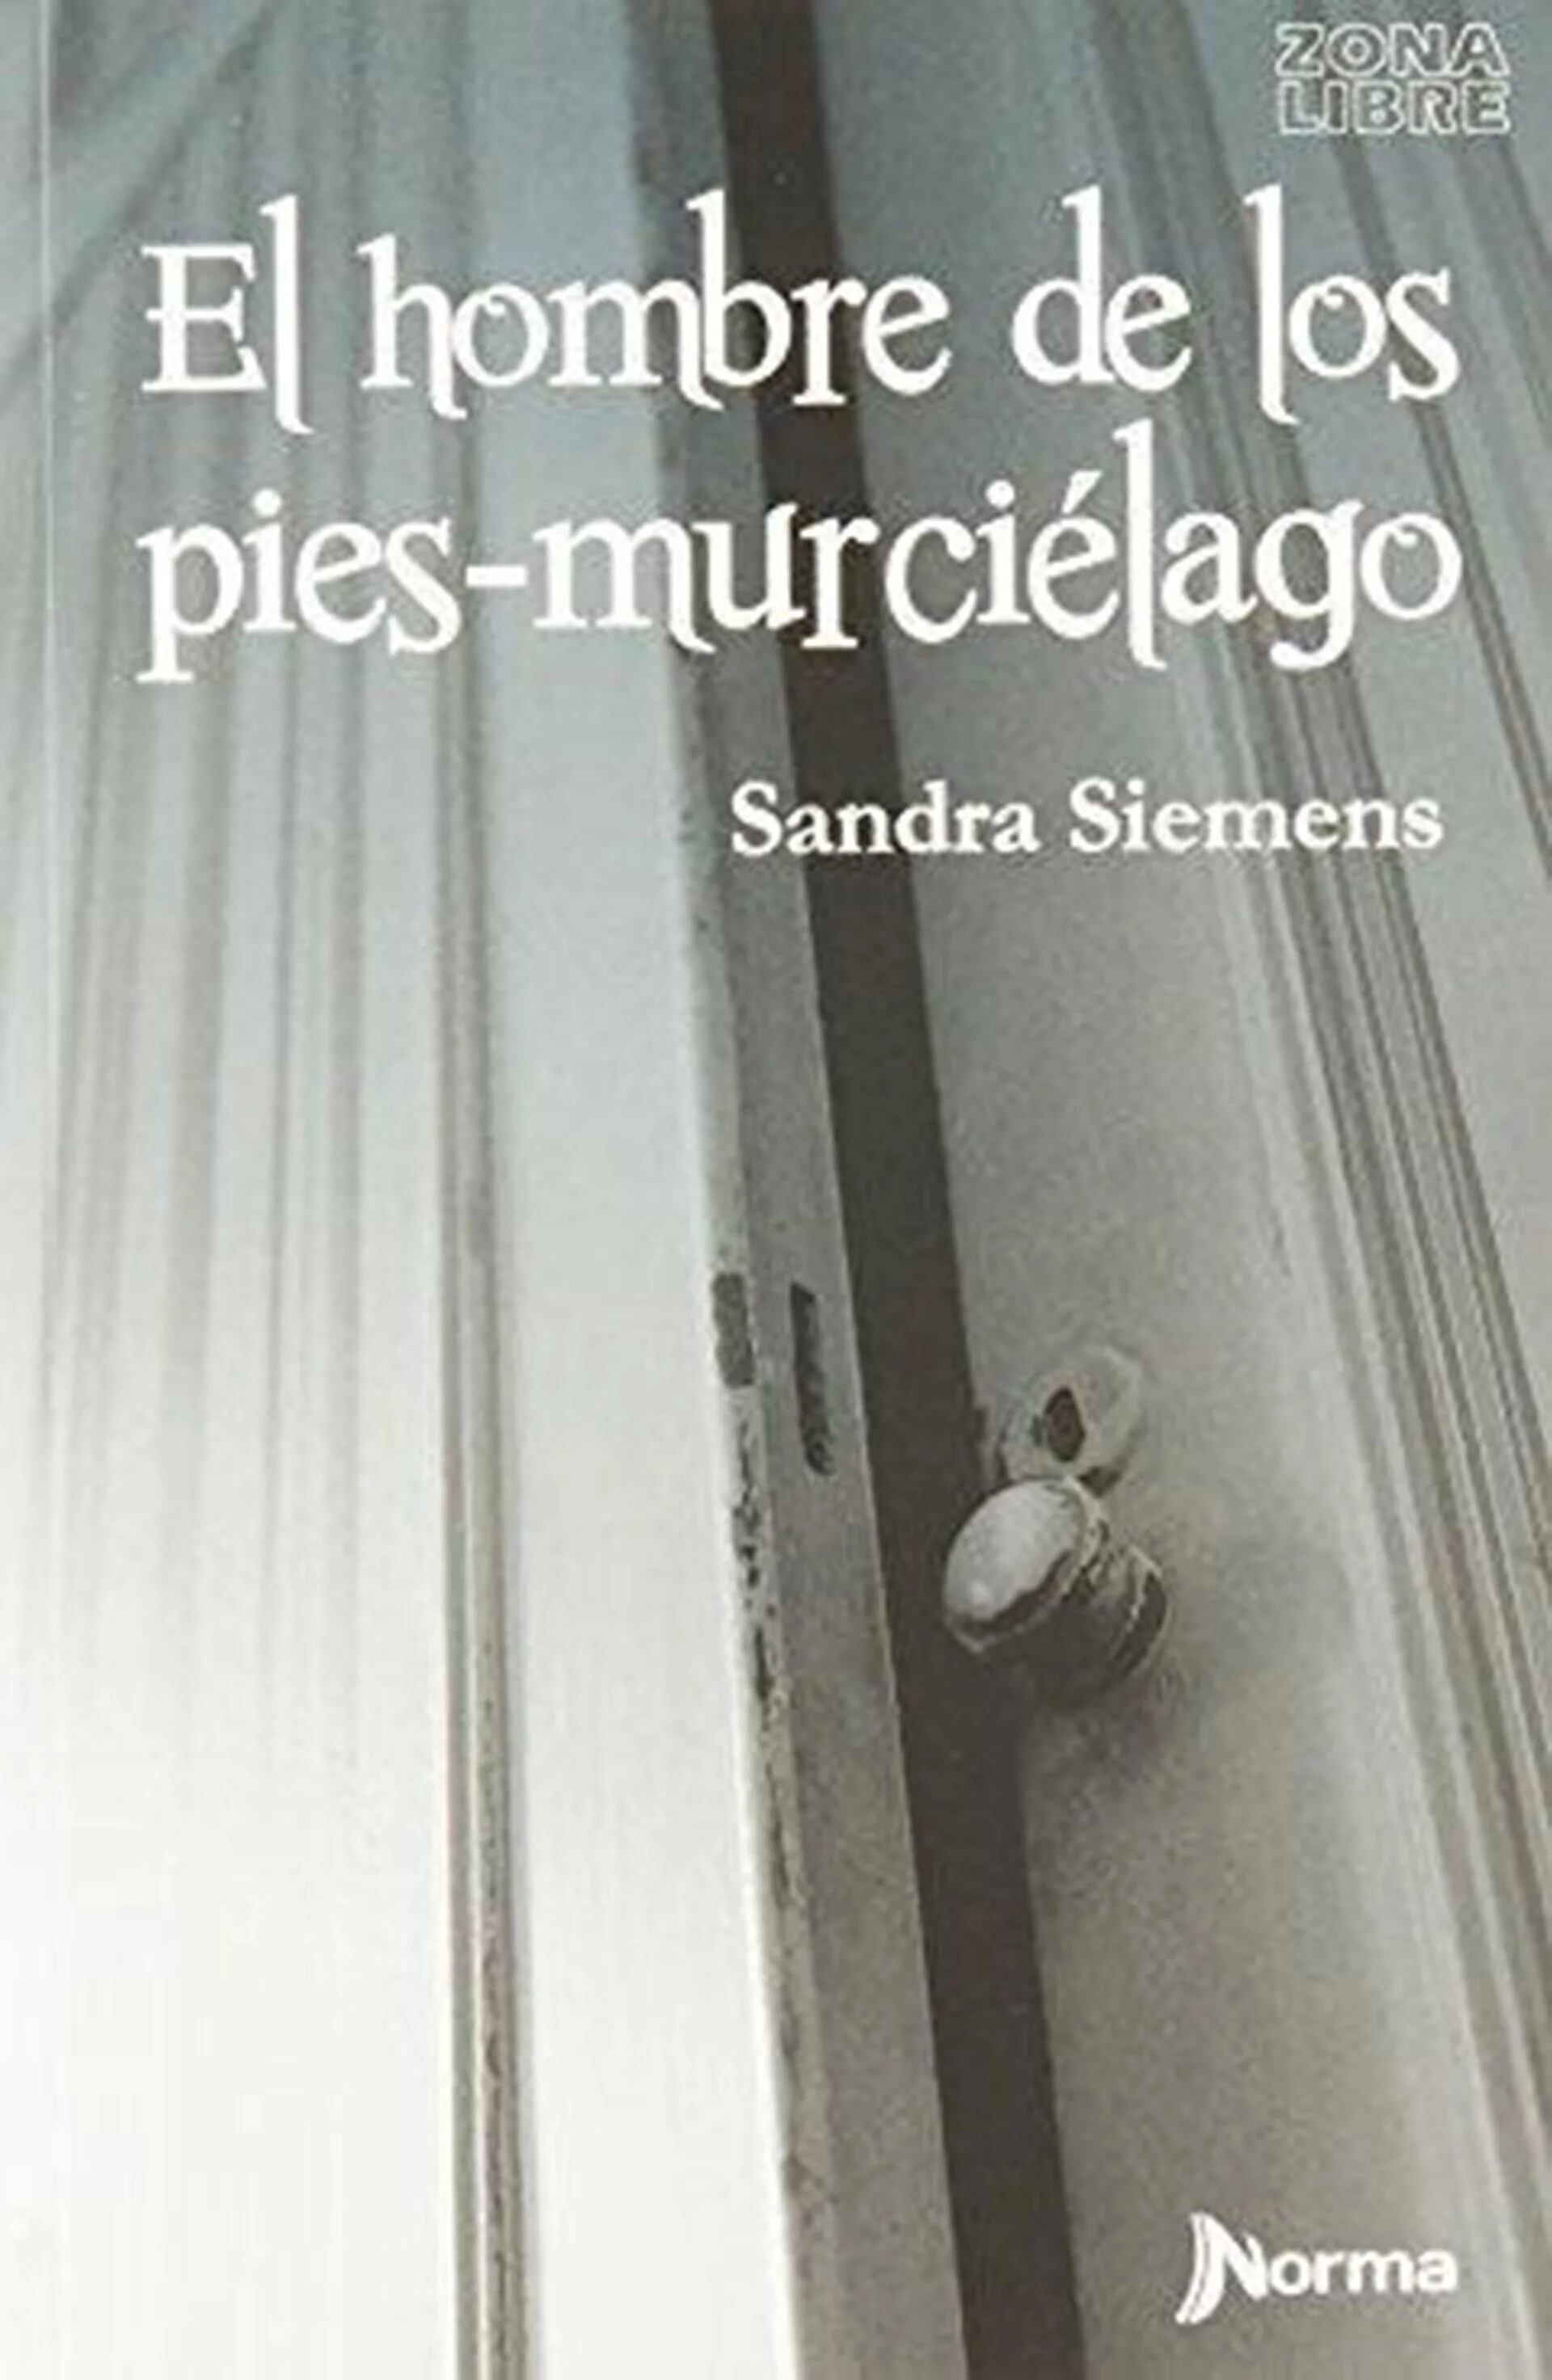 Sandra Siemens es la autora de “la” novela contra el bullying